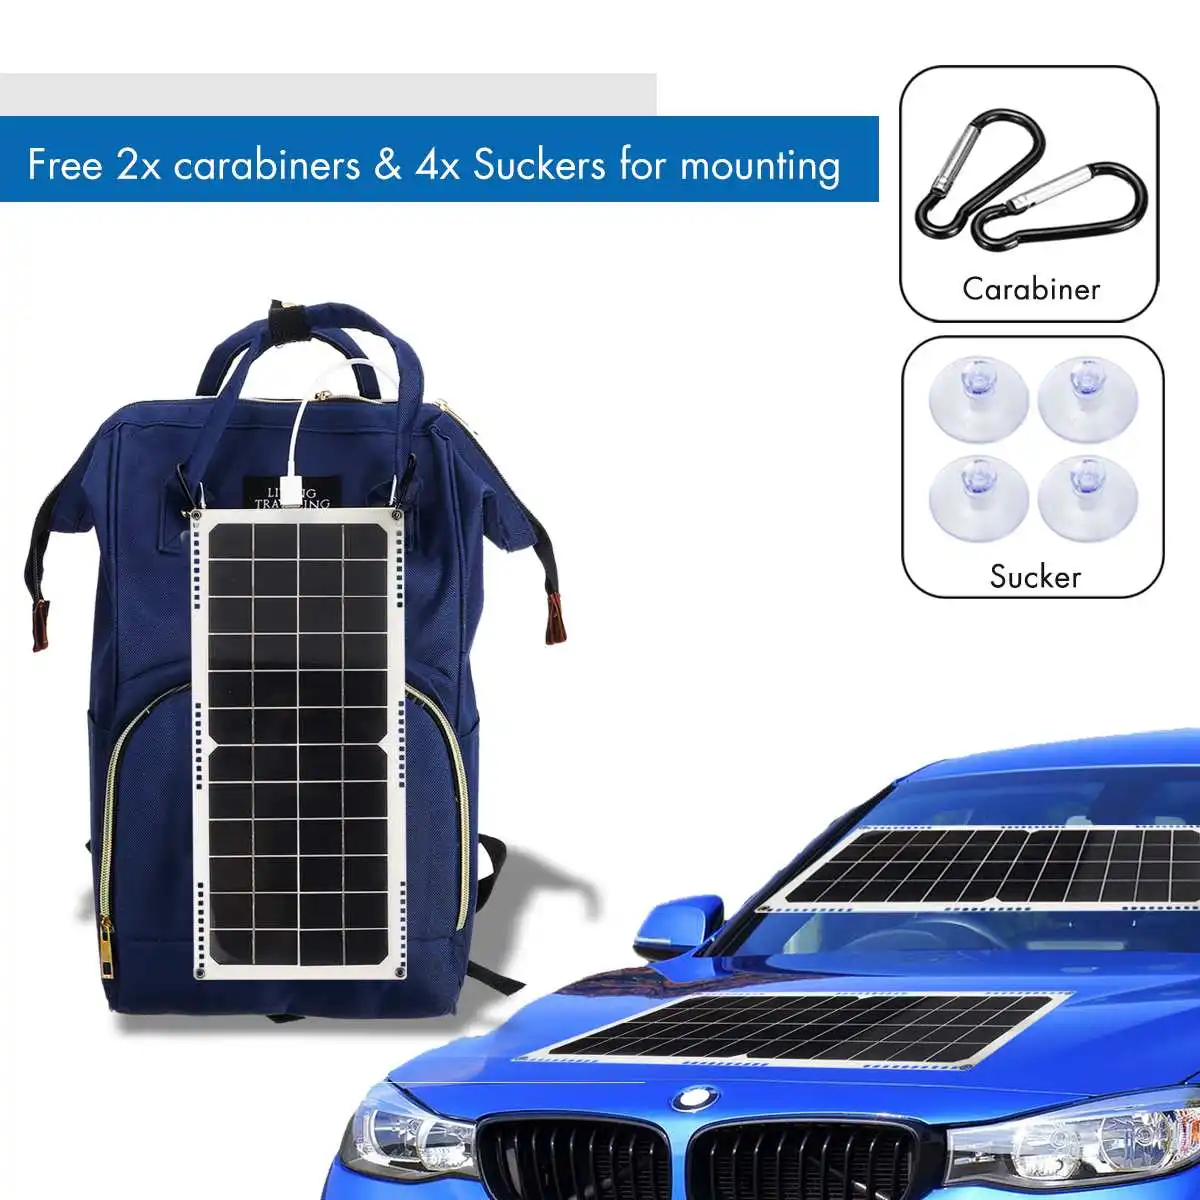 LEORY 20 Вт 14 в 1.5A солнечная панель ячеек пластина гибкое солнечное зарядное устройство для автомобильного аккумулятора с 10A 20A 30A контроллер солнечного заряда